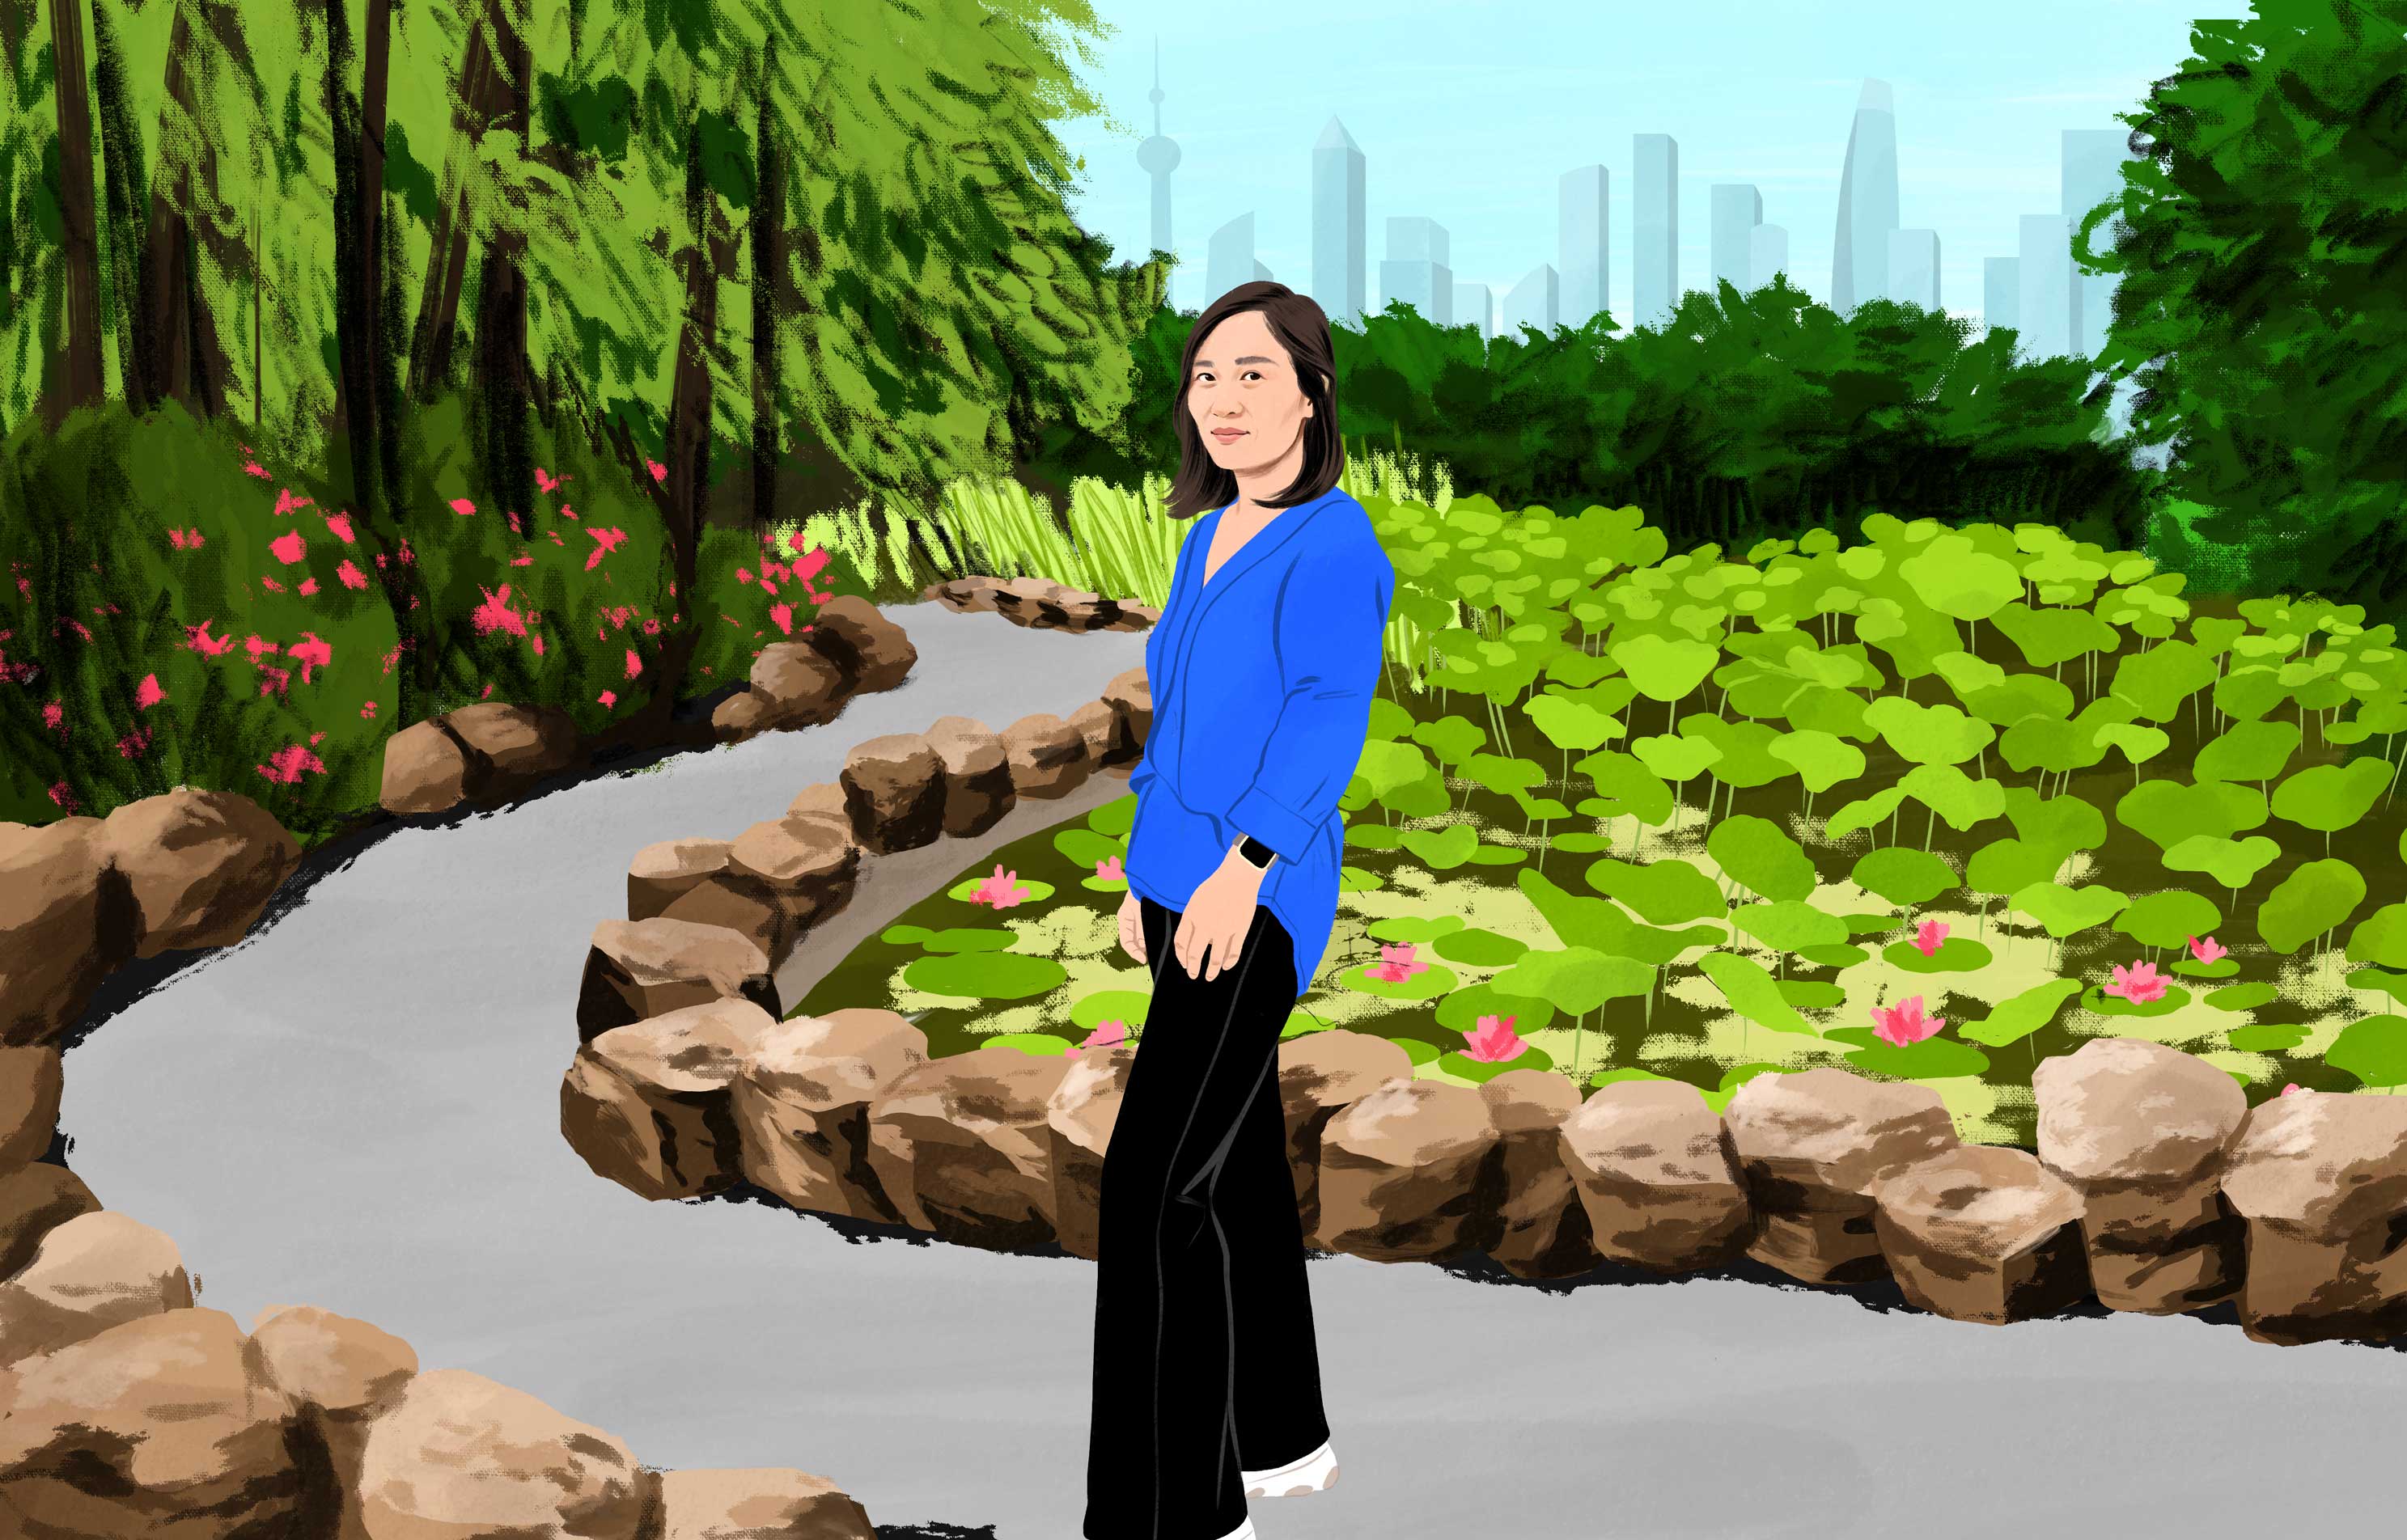 Xu glimlacht terwijl ze door een weelderig stadspark loopt, met ver op de achtergrond moderne wolkenkrabbers. 